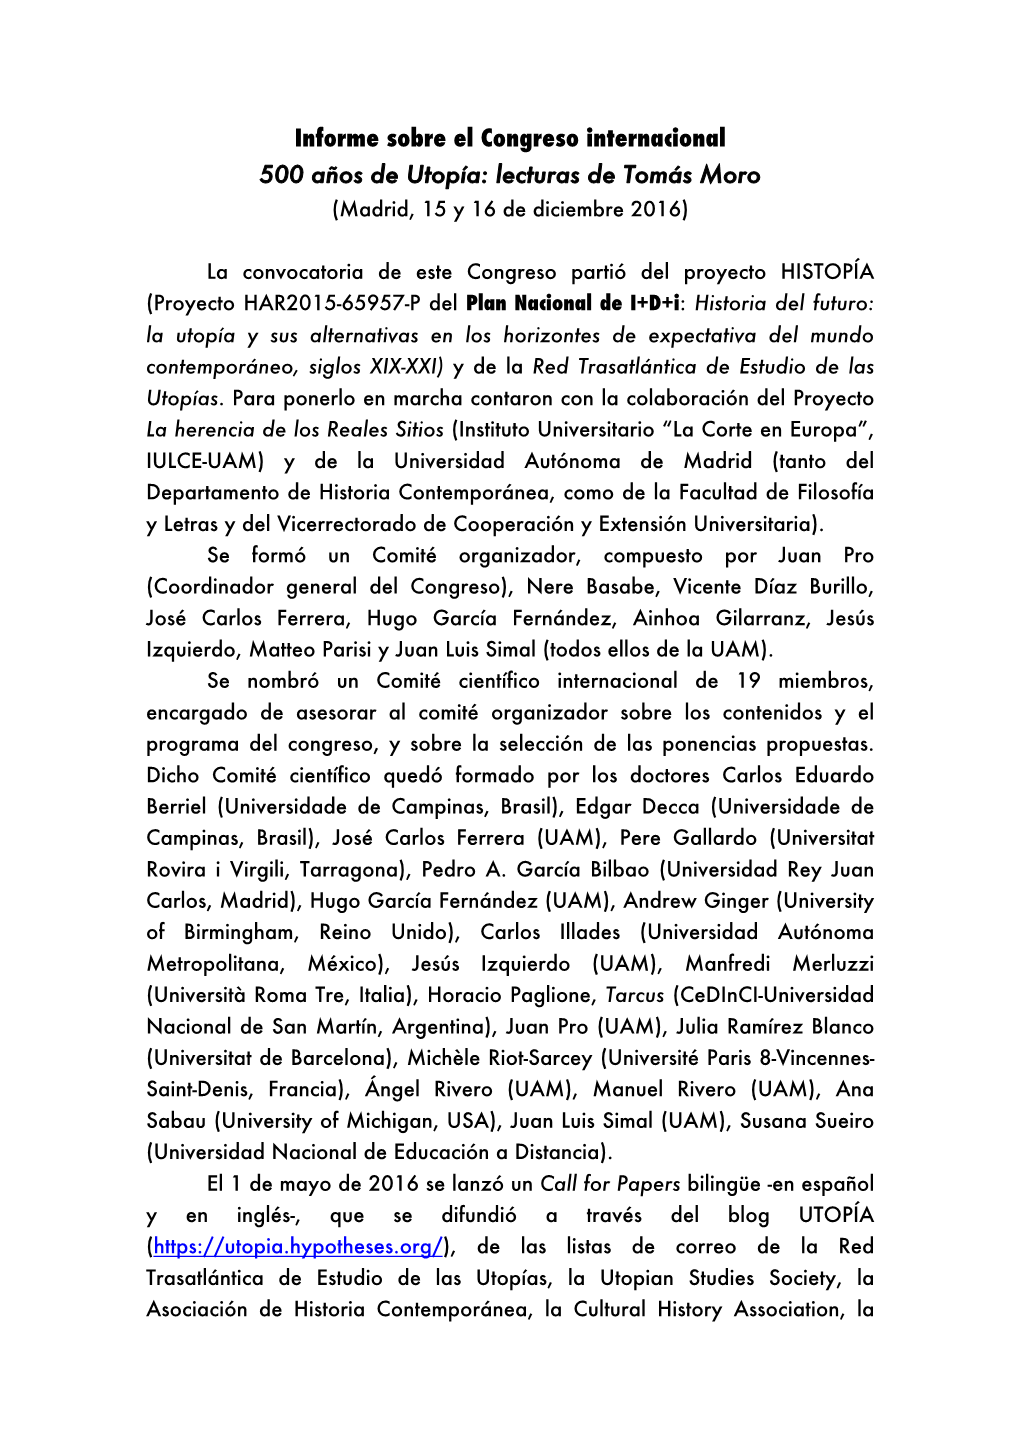 Informe Sobre El Congreso Internacional 500 Años De Utopía: Lecturas De Tomás Moro (Madrid, 15 Y 16 De Diciembre 2016)